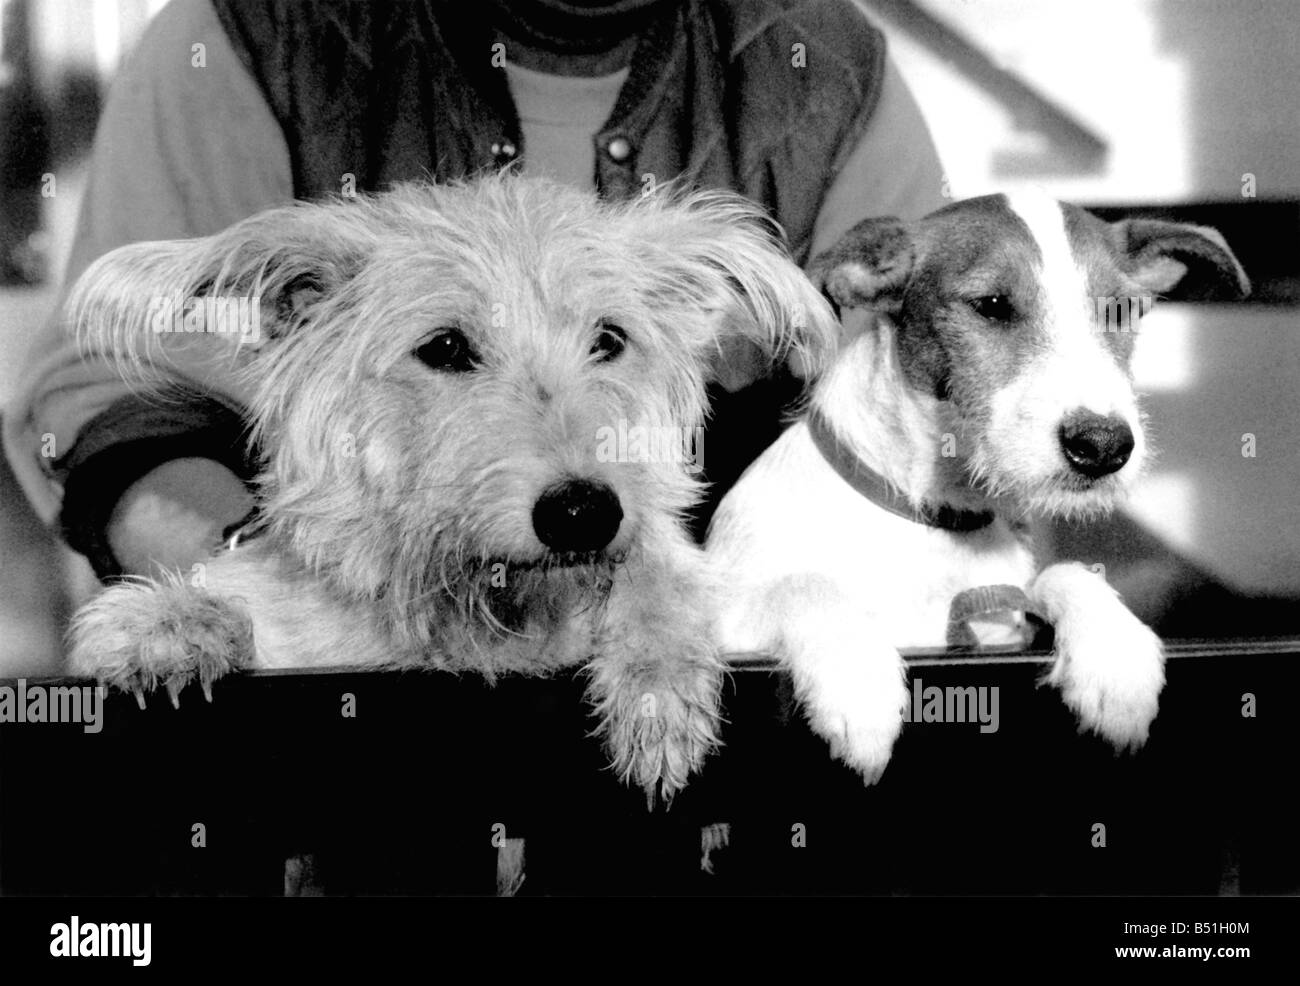 Warten... Zwei Haustiere, mit Dreh-Hund ausdrücken, die als Kumpels in der Re-homing Hause Hunde zusammengetan. Dezember 1988 P000107; Stockfoto